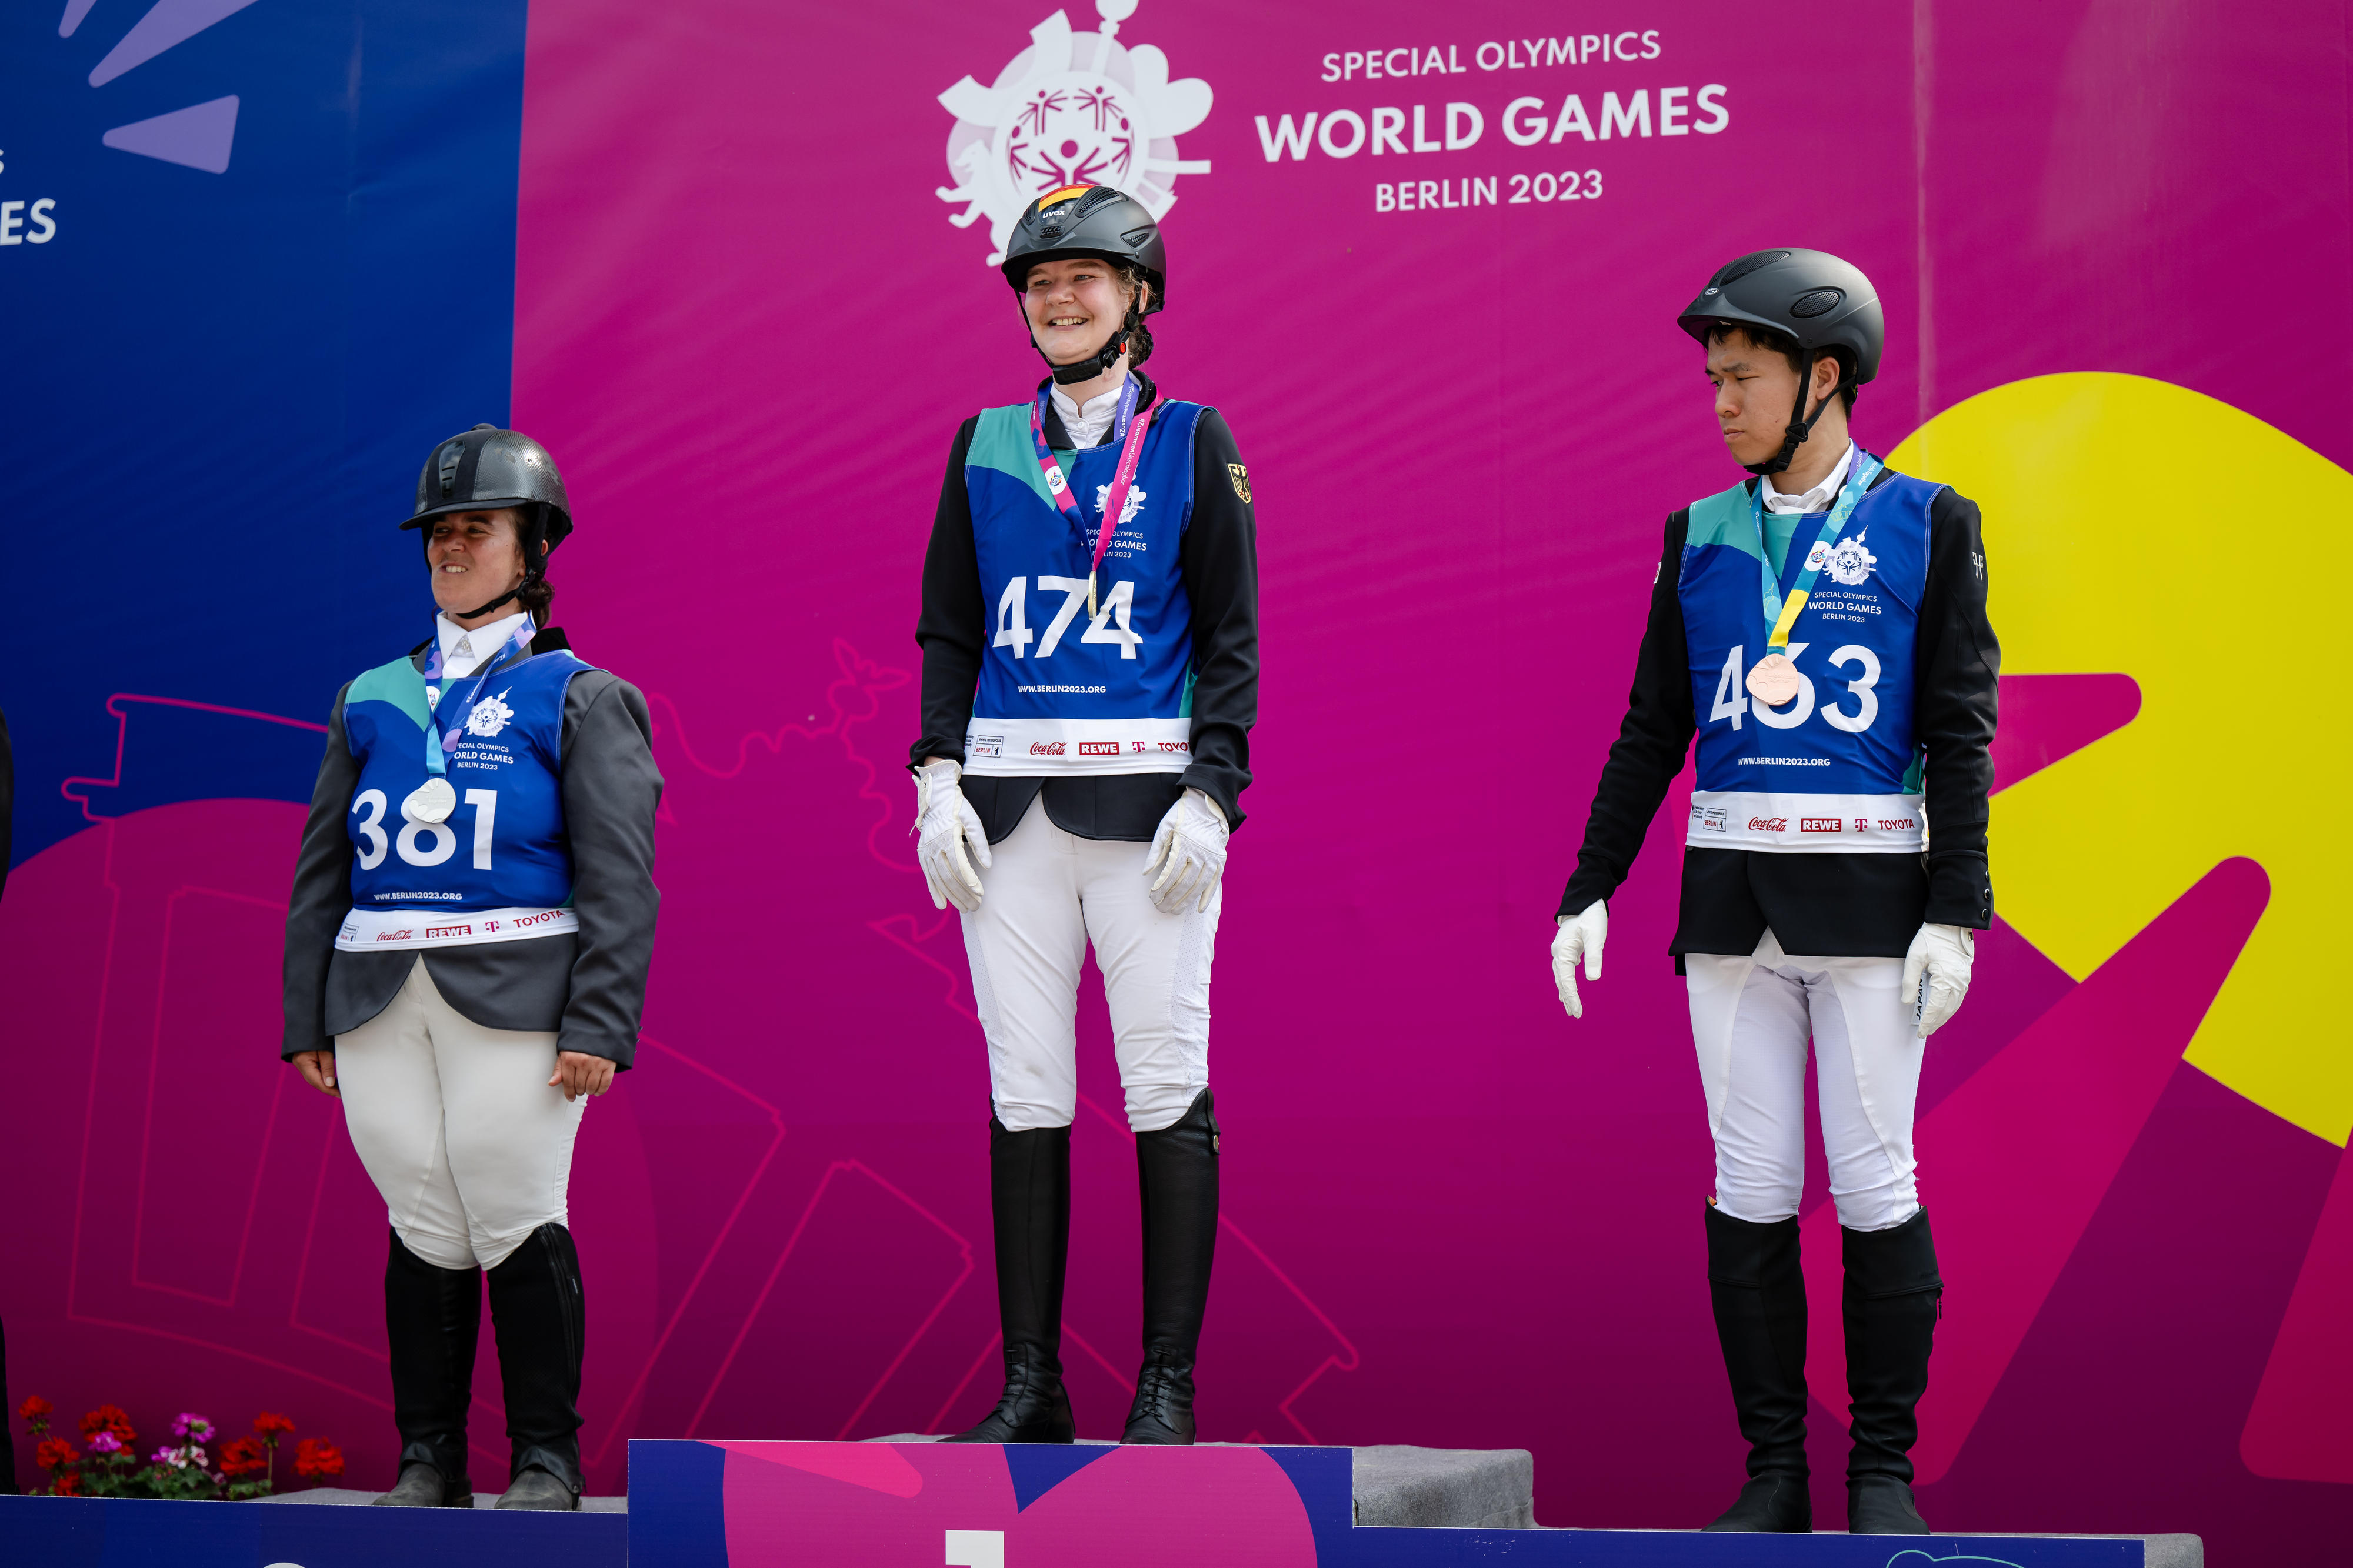 Lisa Preiss steht in der Mitte eines Siegertreppchens, links von ihr die Italienerin, rechts von ihr der Japaner.